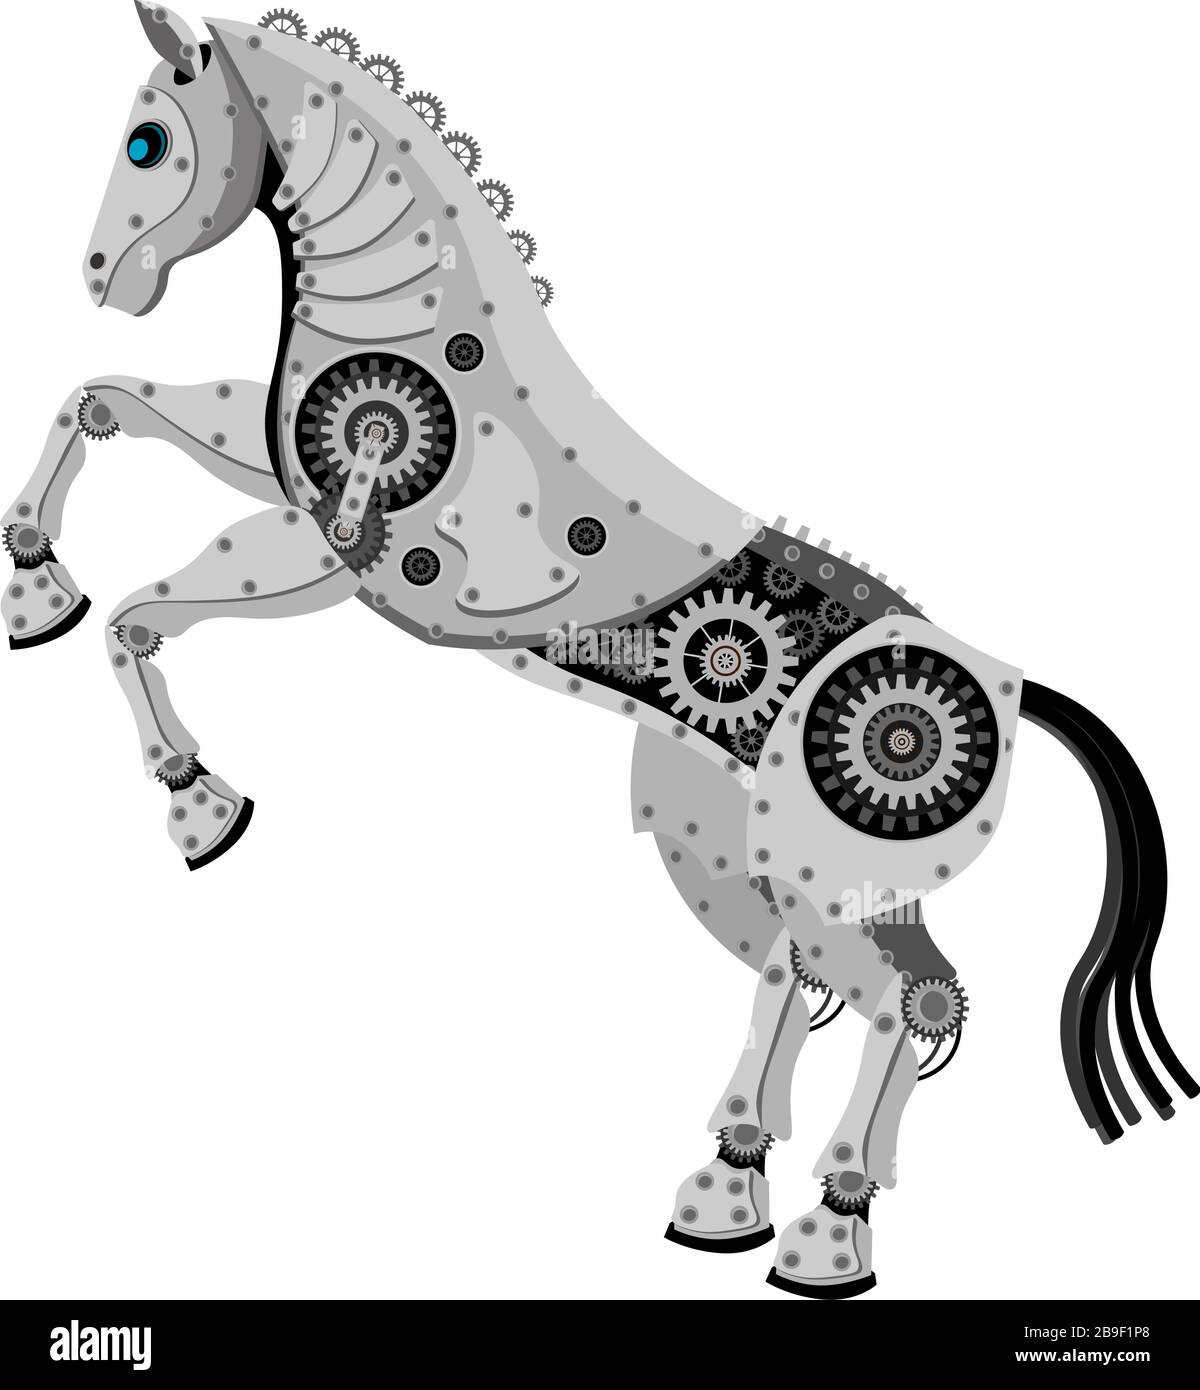 Cavallo nello stile del robot. Cavallo vettoriale meccanico metallico su sfondo bianco isolato. Illustrazione Vettoriale